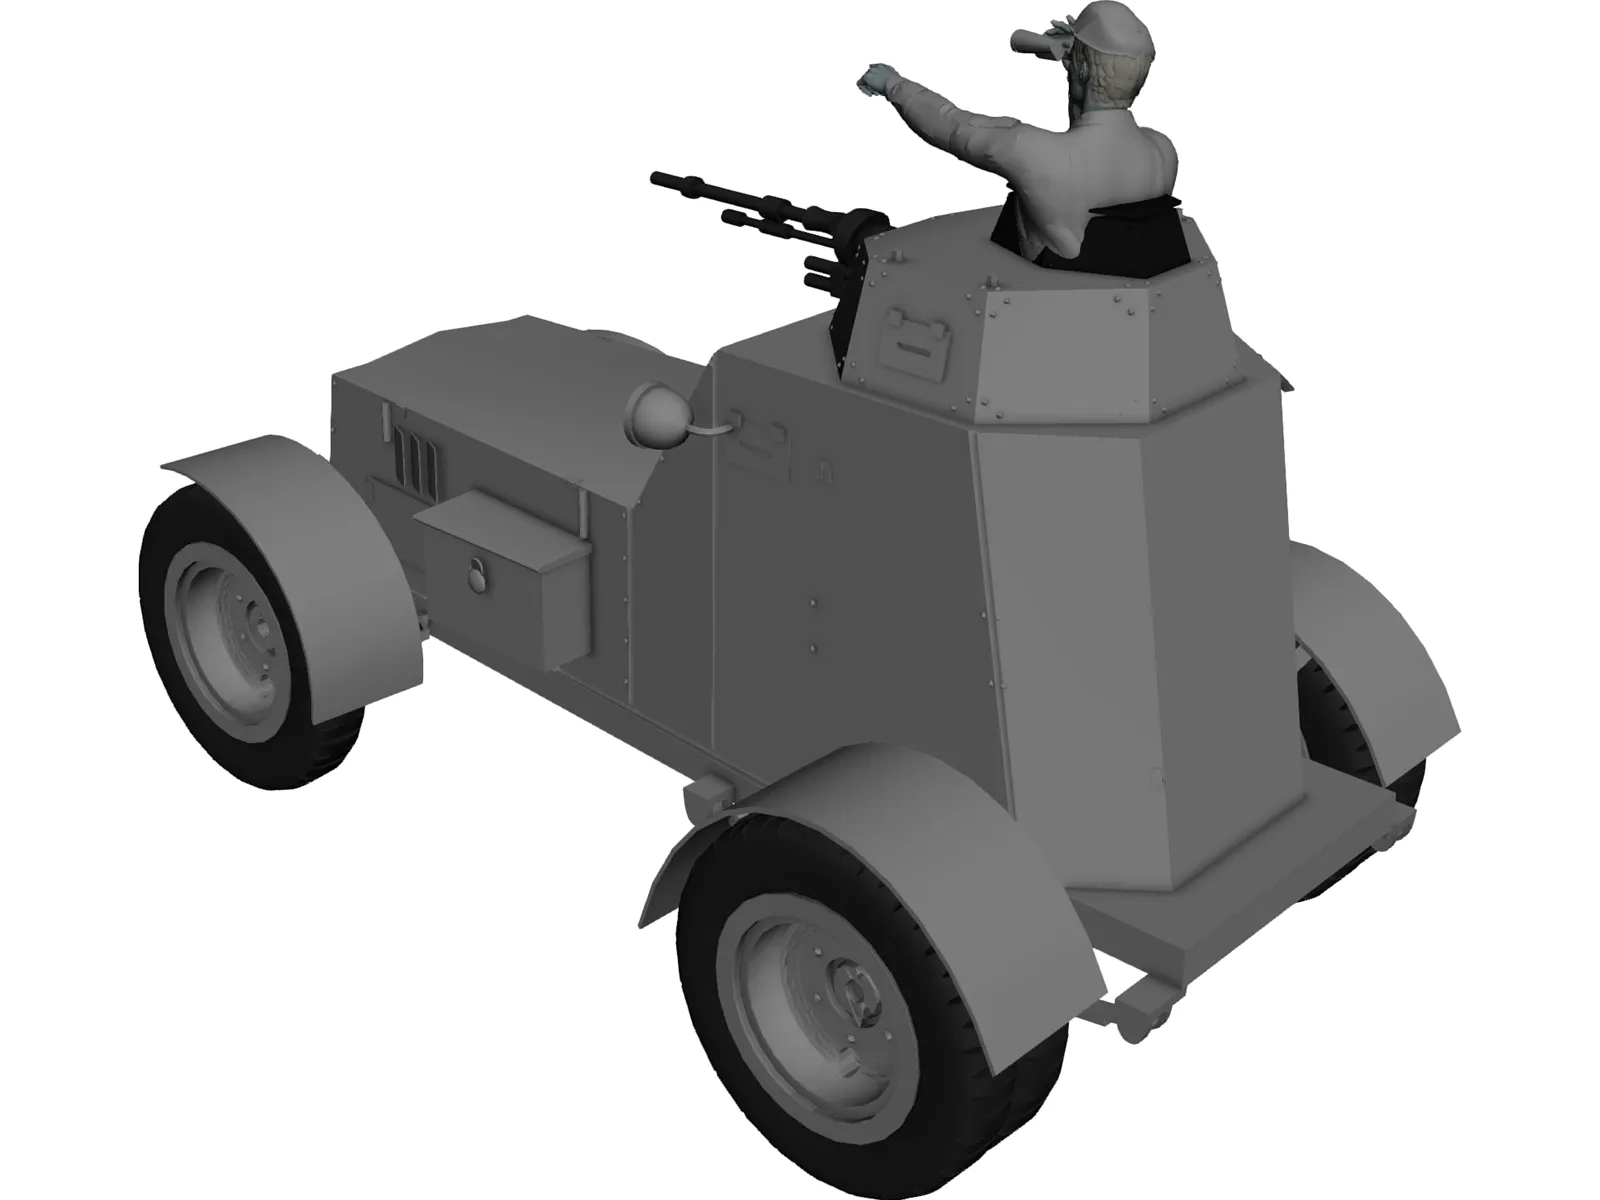 Wz.34 3D Model